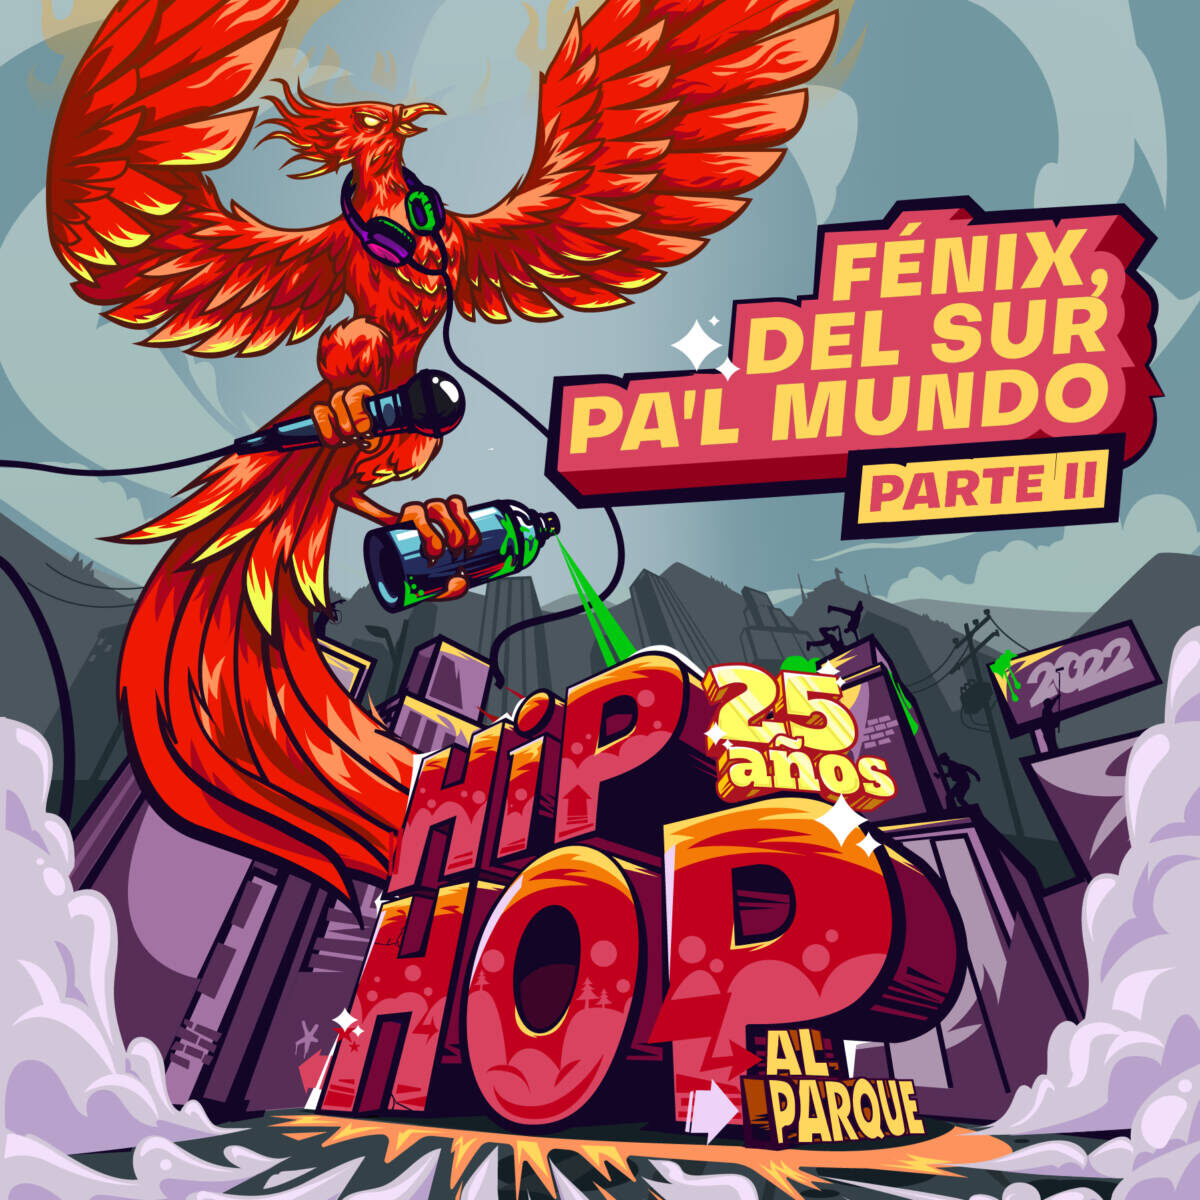 Así Hip Hop al Parque celebra sus 25 años 'Fénix, del sur pa'l mundo' es el nombre del disco que, a lo largo del segundo semestre de 2022, dará continuidad a la celebración de los 25 años de Hip Hop al Parque, el Festival al Parque del Instituto Distrital de las Artes que reunió a más de 120.000 personas en el Parque Metropolitano Simón Bolívar a inicios del pasado mes de julio.